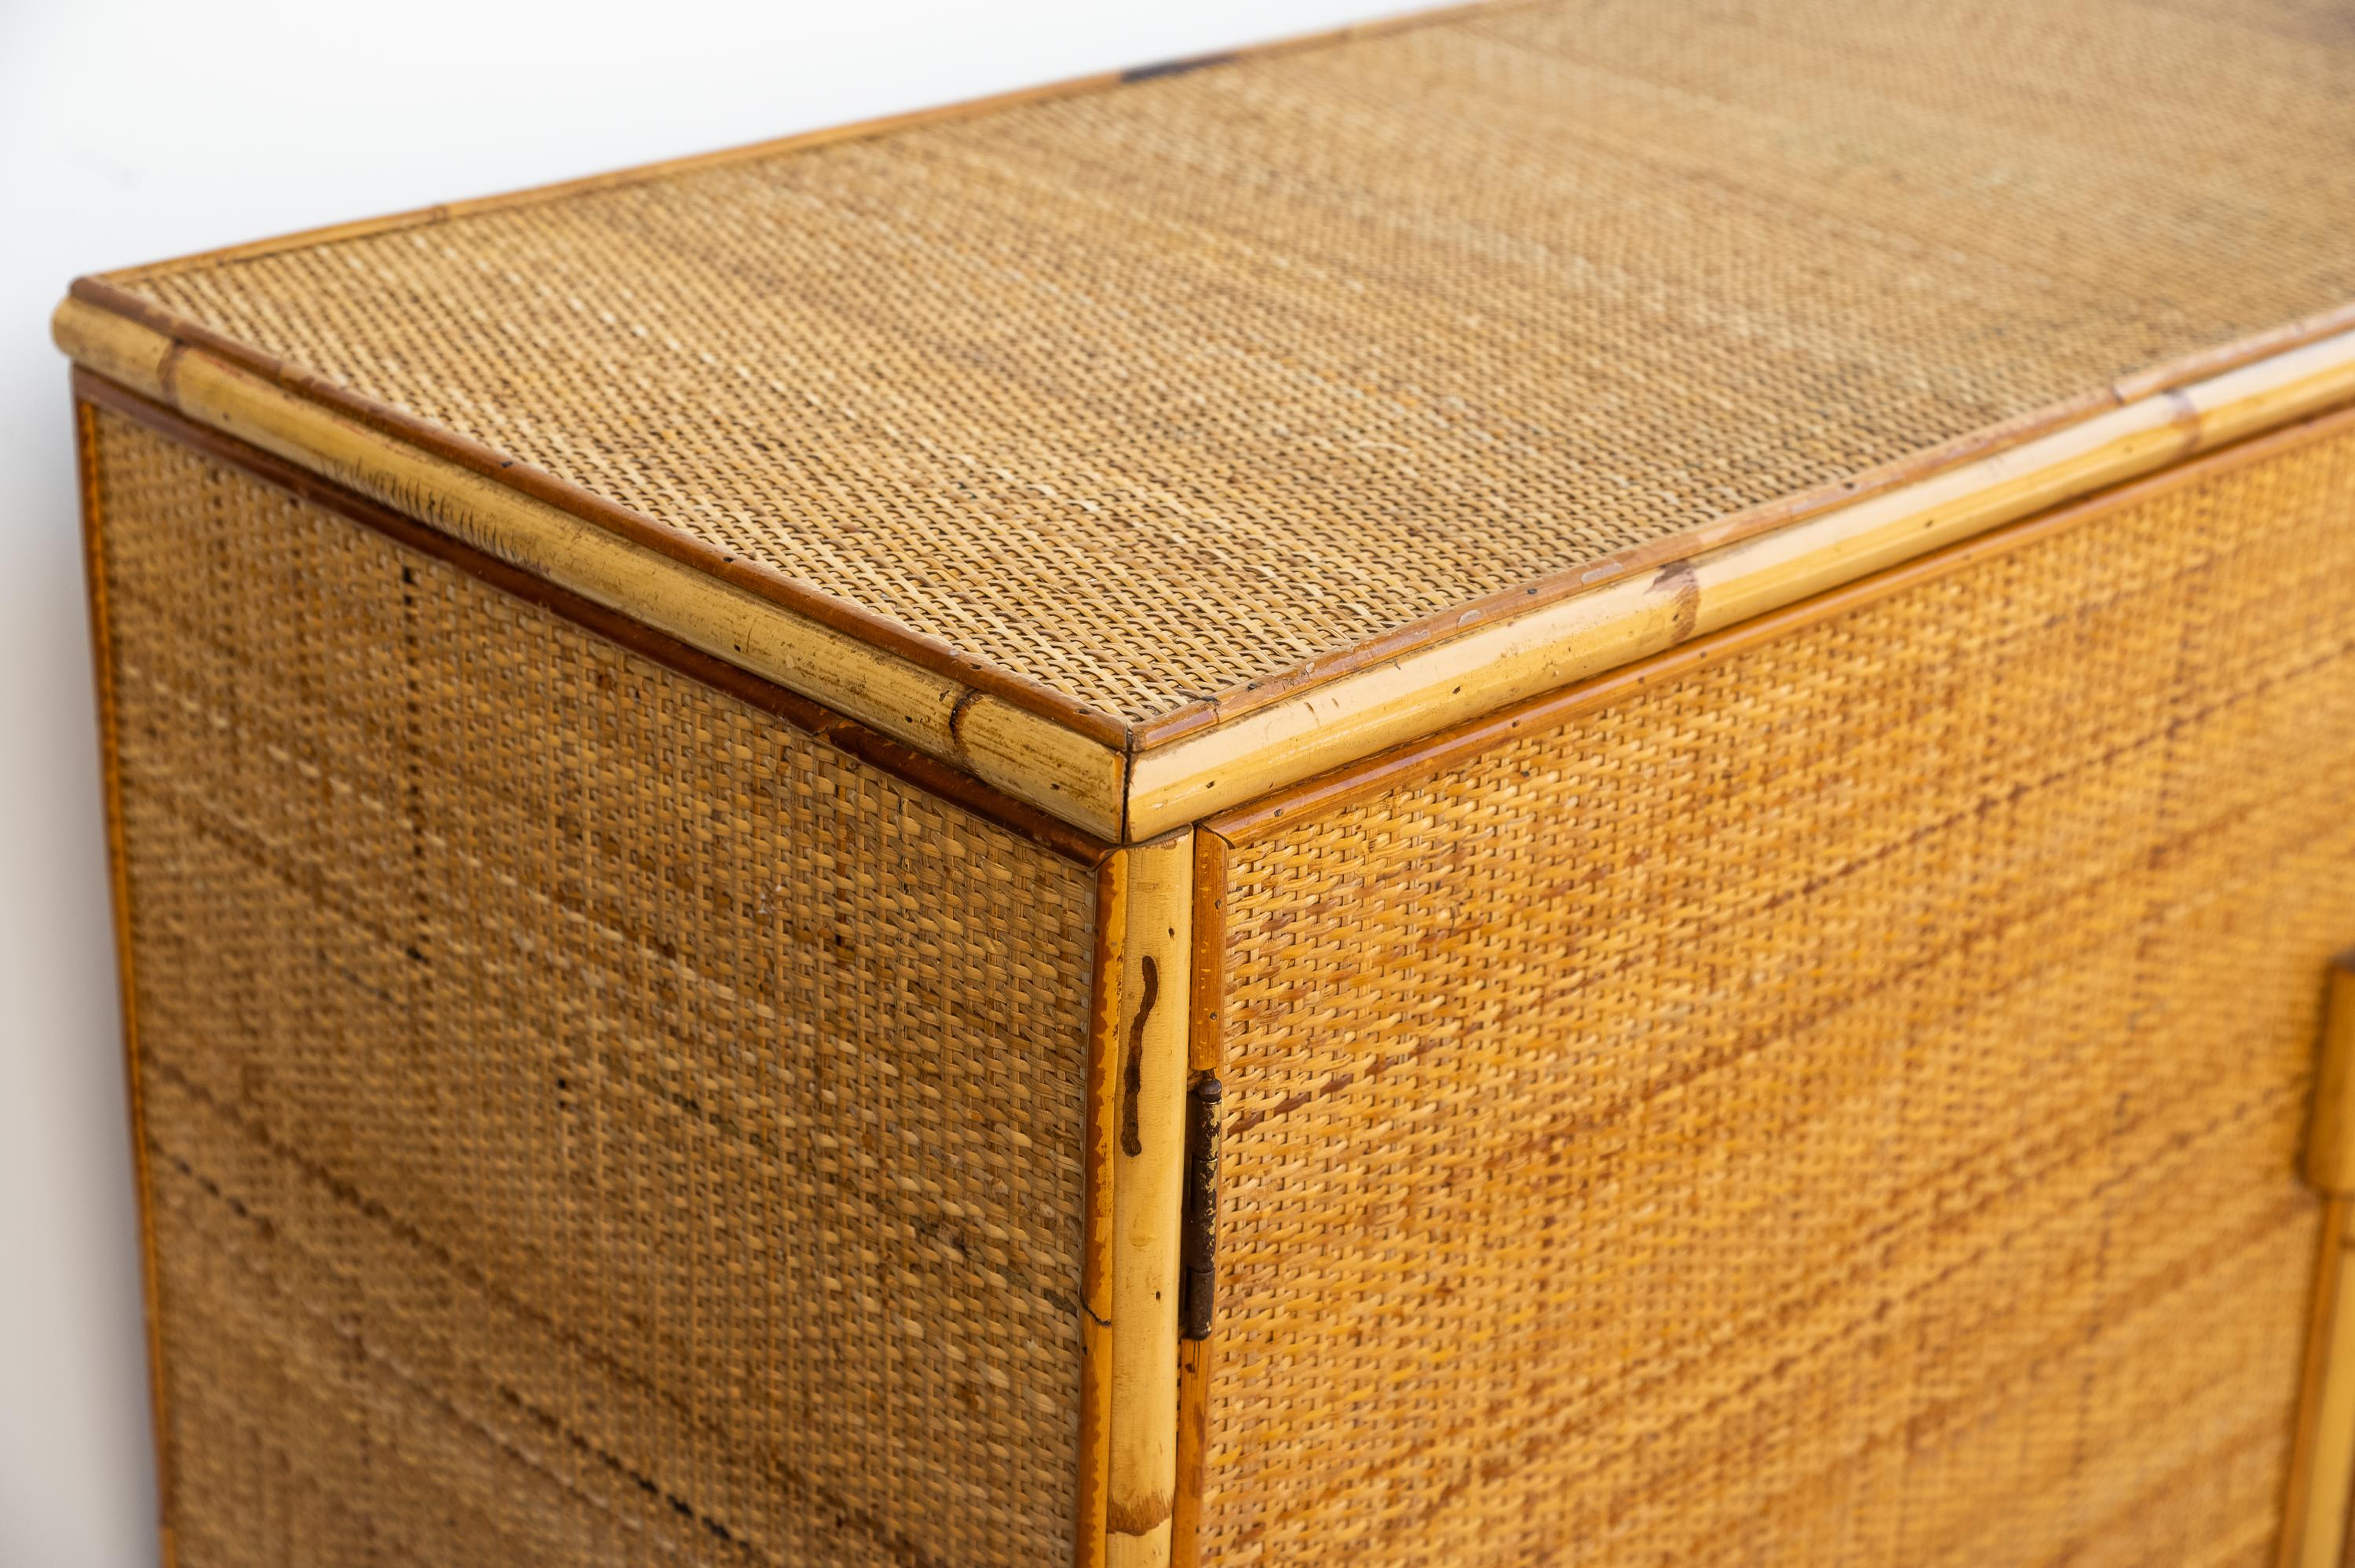 Questa bellissima cassettiera vintage in vimini e bambù risale all'anno 1970.  
E' realizzata in legno rivestito da una trama in rattan e le maniglie sono rivestite in giunco. Ha due sportelli e quattro cassetti in vimini e bambu'. 
Prodotto in